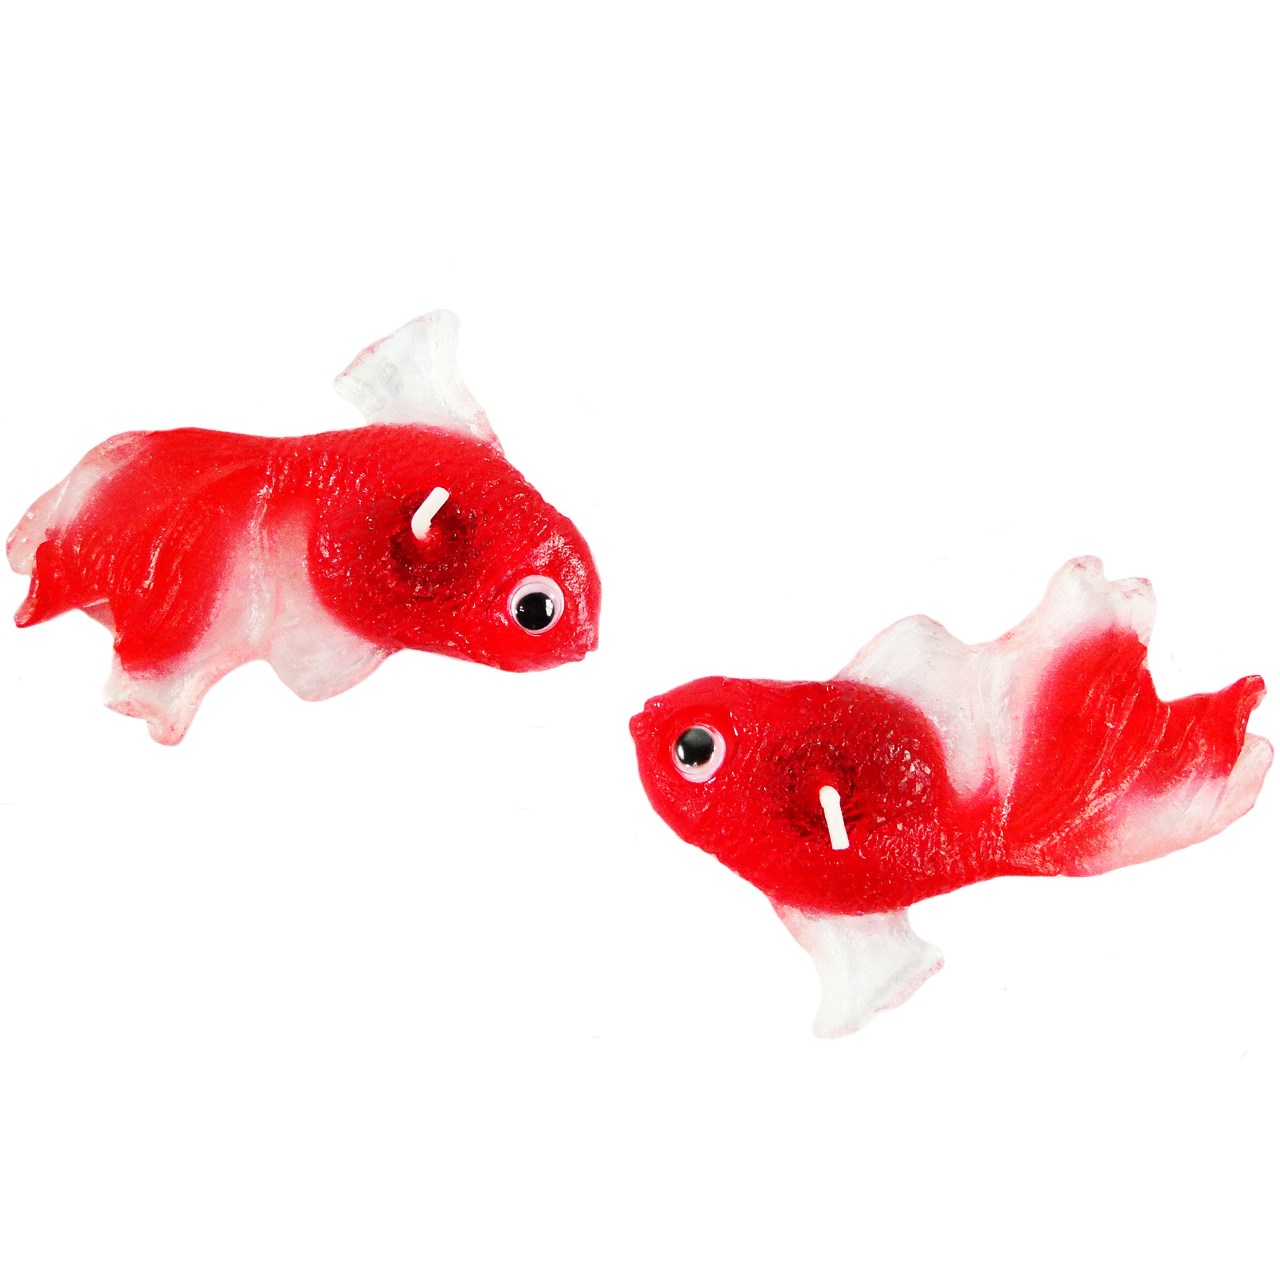 نقد و بررسی شمع مدل ماهی قرمز کد F1 بسته 2 عددی همراه 2 عدد مگنت چوبی طرح Baby توسط خریداران